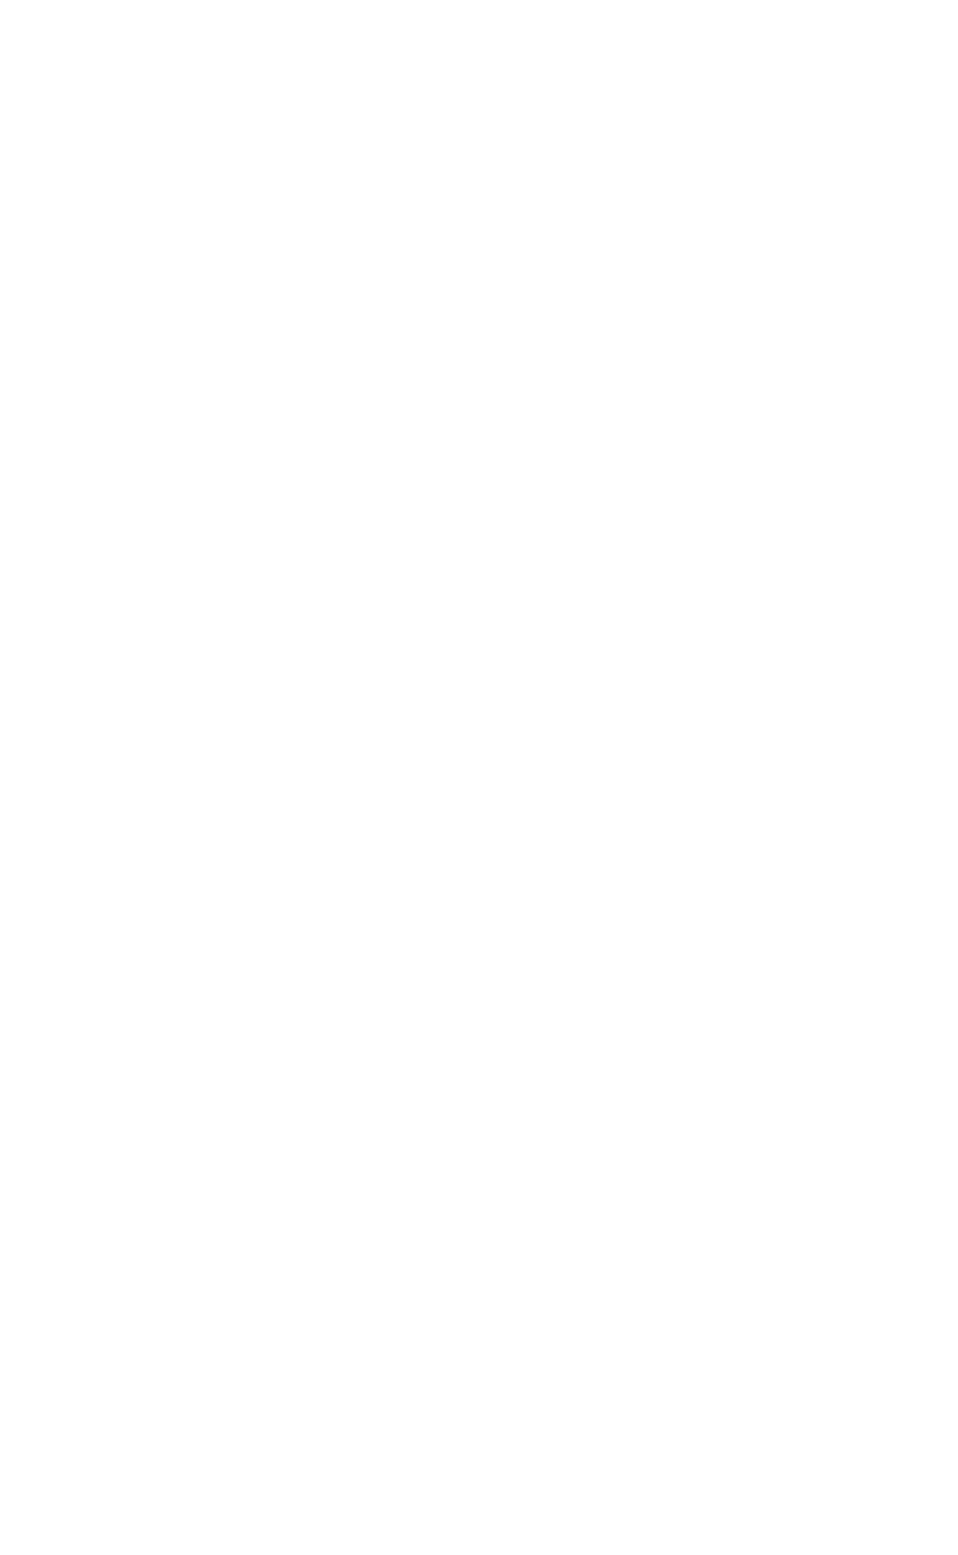 Unum logo pour fonds sombres (PNG transparent)